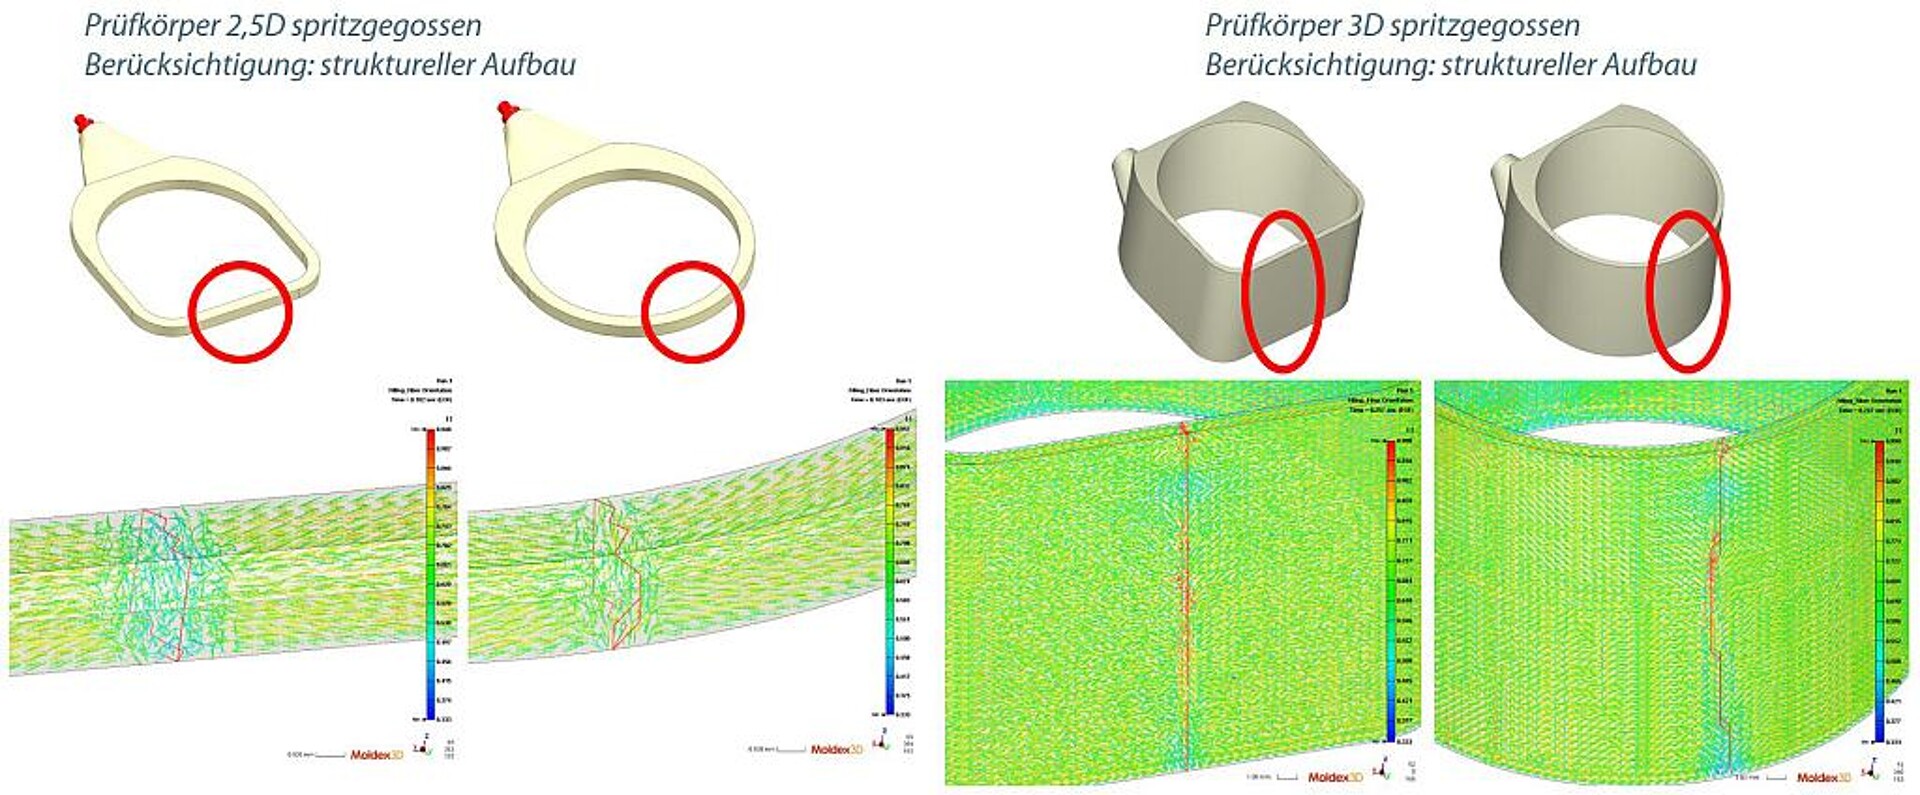 Ergebnisse von Voruntersuchungen aus Füllsimulationen zur geometrieabhängigen Faserorientierung an einer Bindenaht. (Abb.: KUZ)